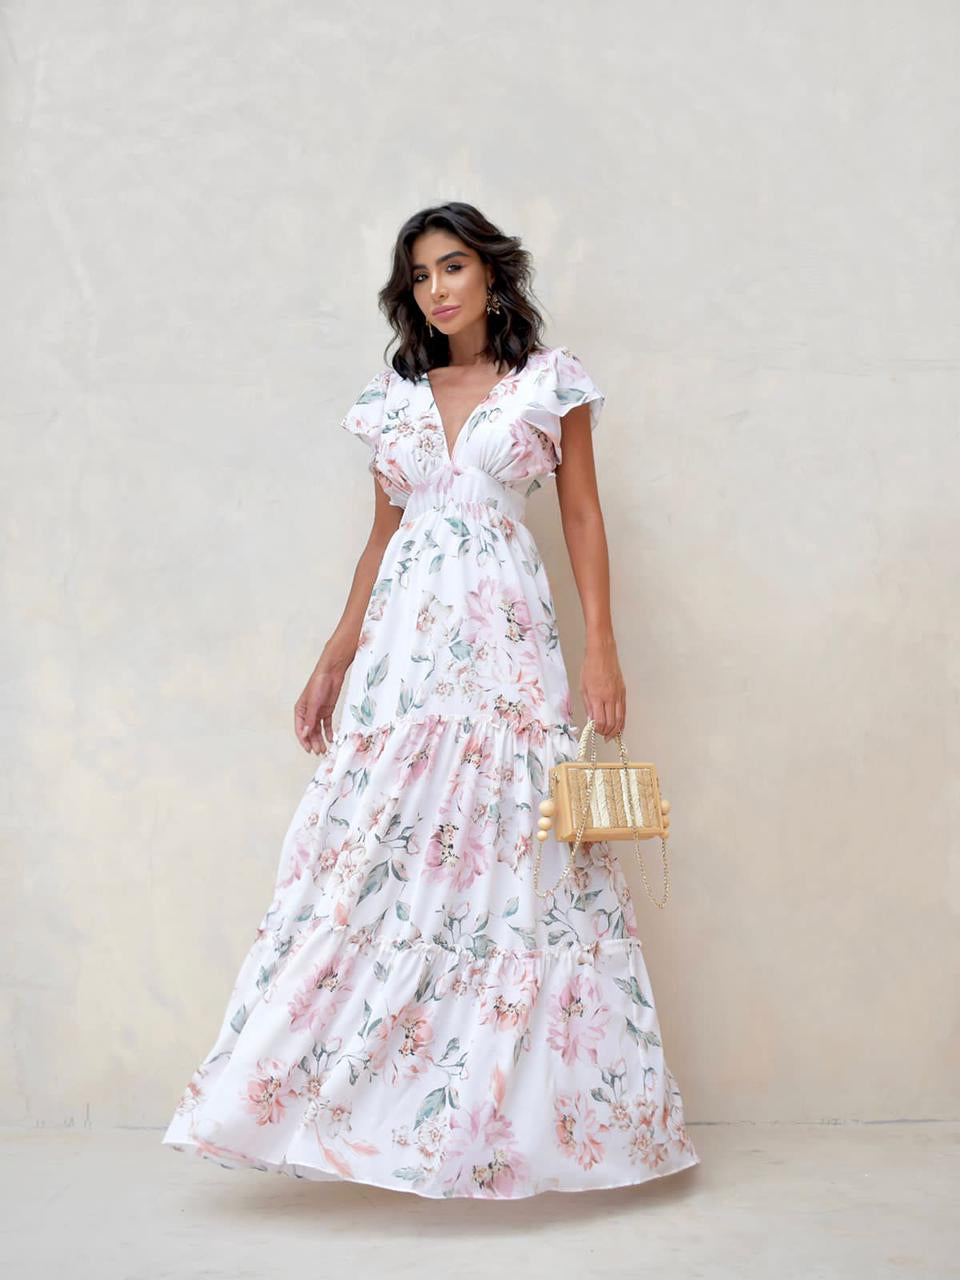 DAPHNE Maxi Floral Dress - FINAL SALE